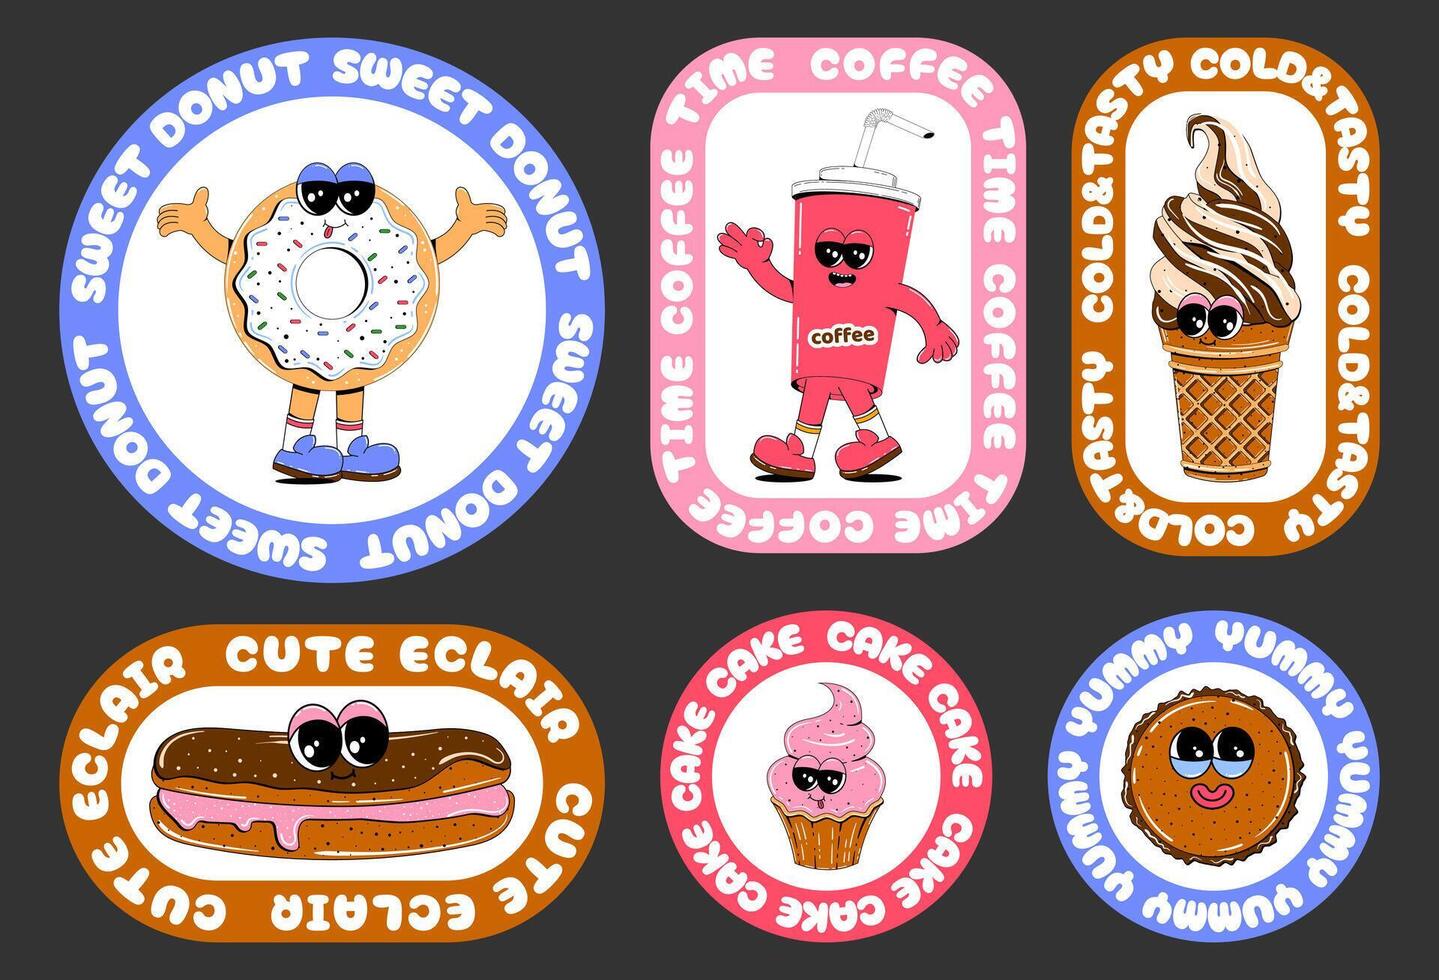 reeks van stickers met snoepgoed in retro tekenfilm stijl. vector illustratie van donut, ijs room, koffie, koekje met cirkel tekst in de het formulier van retro stickers.